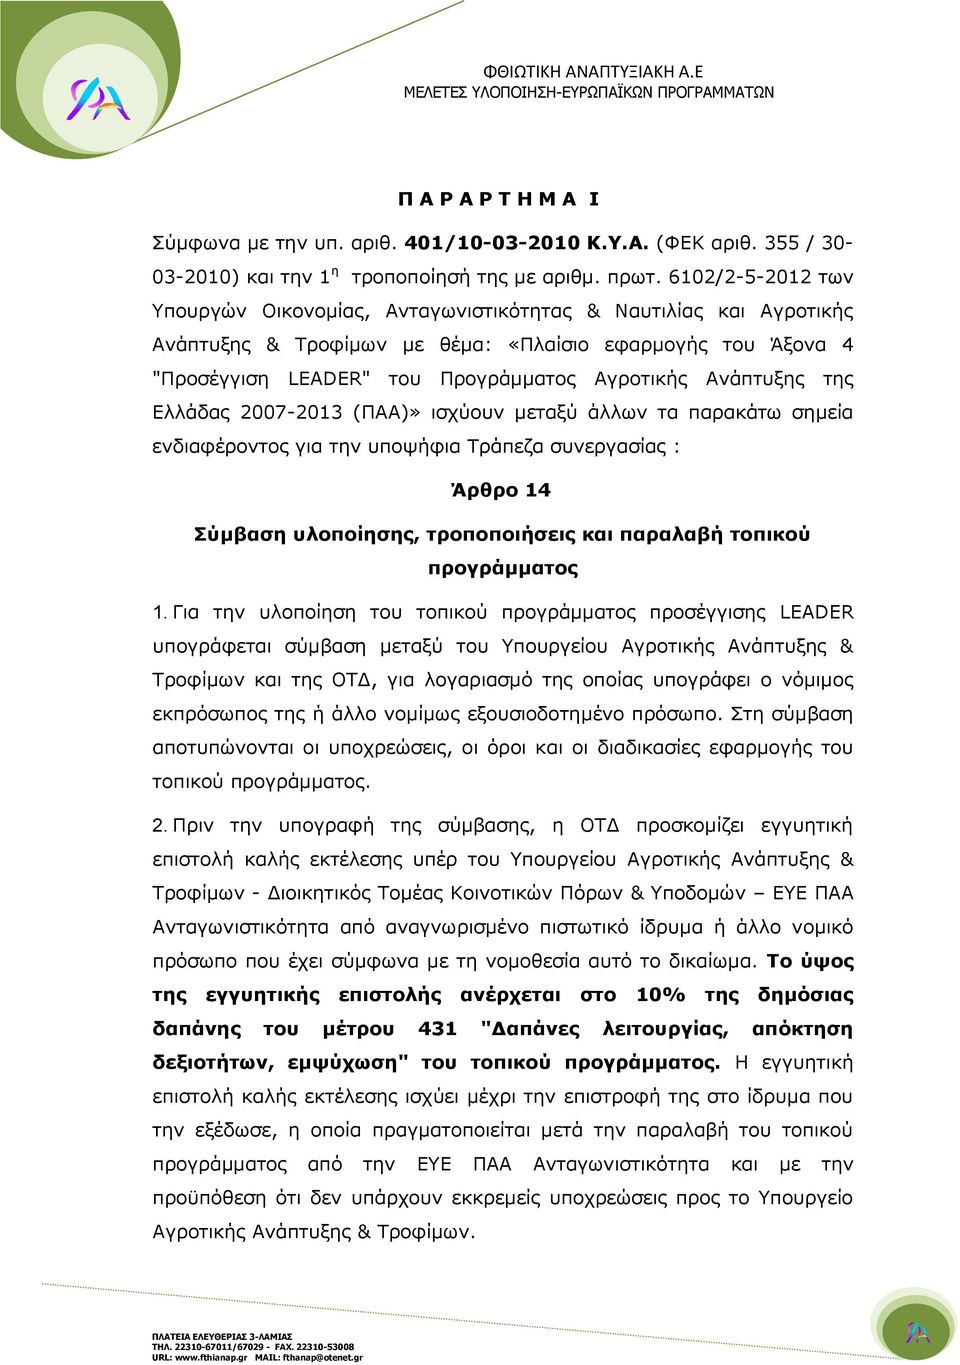 Ανάπτυξης της Ελλάδας 2007-2013 (ΠΑΑ)» ισχύουν μεταξύ άλλων τα παρακάτω σημεία ενδιαφέροντος για την υποψήφια Τράπεζα συνεργασίας : Άρθρο 14 Σύμβαση υλοποίησης, τροποποιήσεις και παραλαβή τοπικού